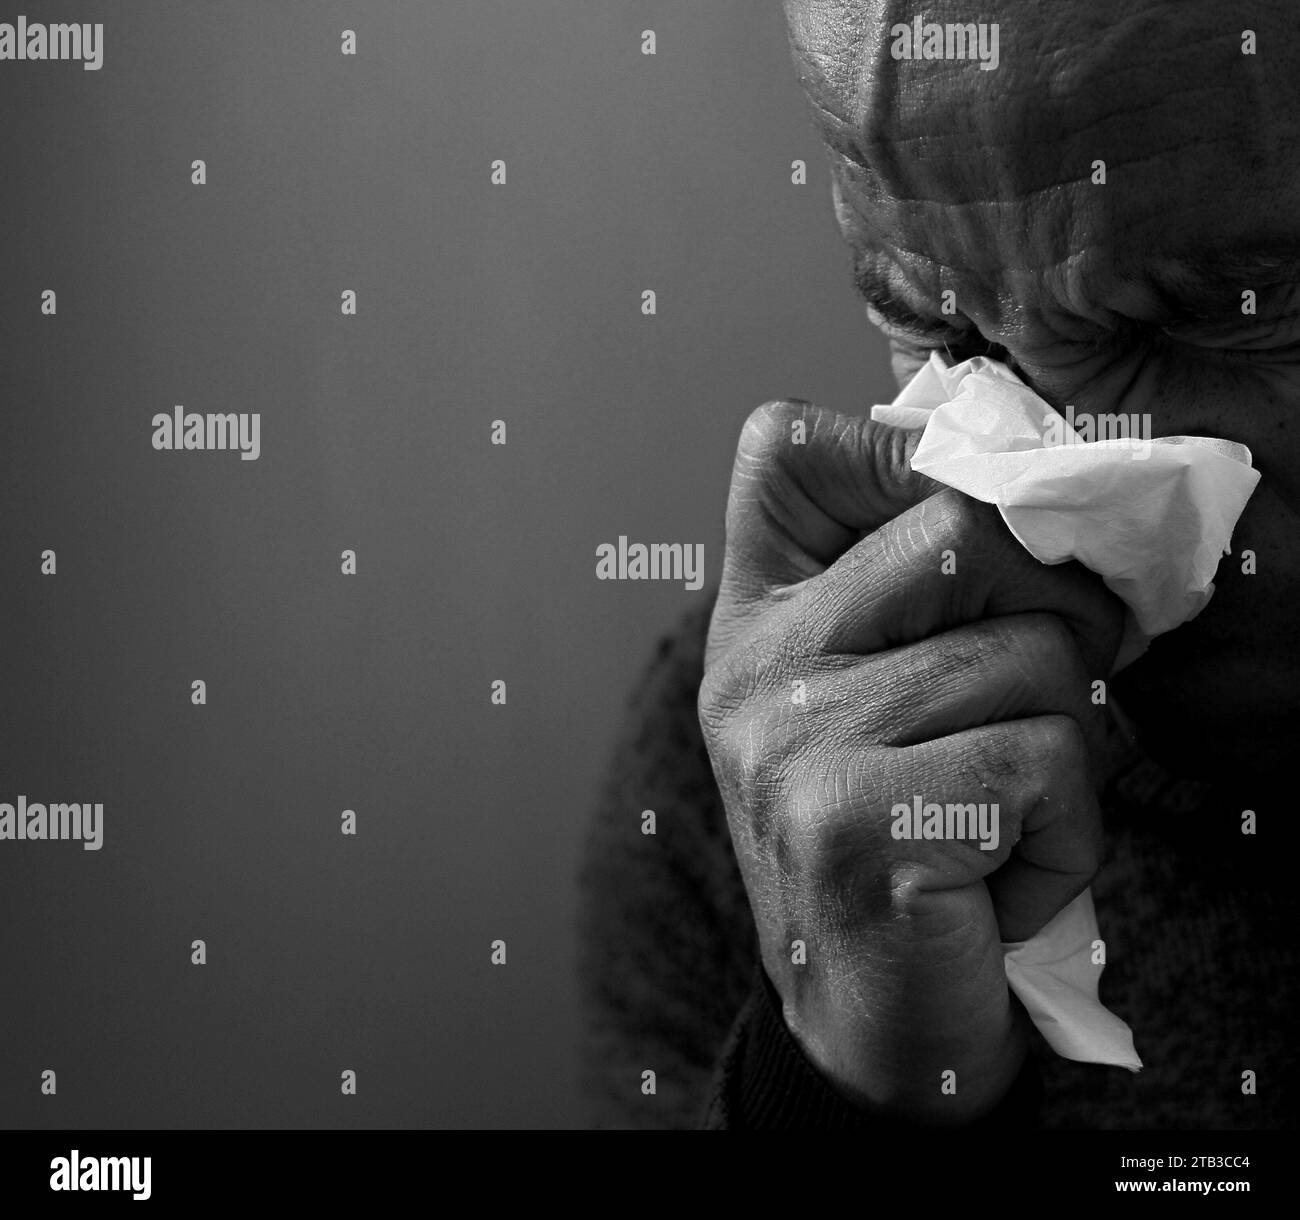 raffreddore e influenza che soffia il naso dopo aver preso influenza su sfondo grigio nero con la gente stock immagine foto stock Foto Stock